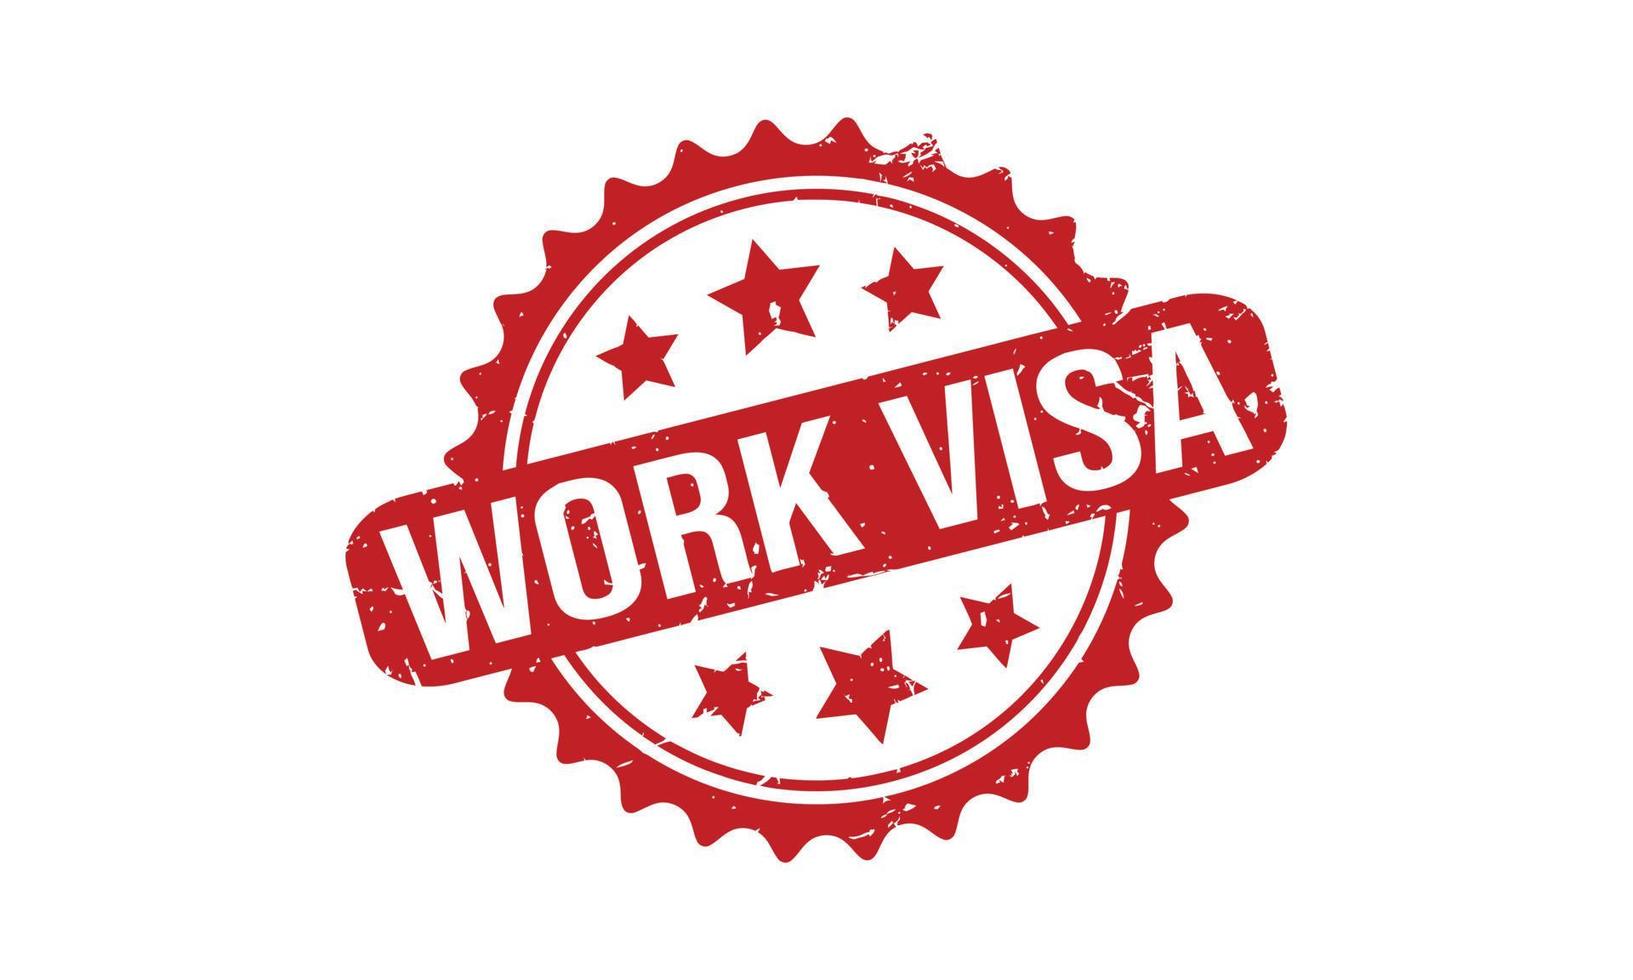 Work Visa Rubber Grunge Stamp Seal Vector Illustration